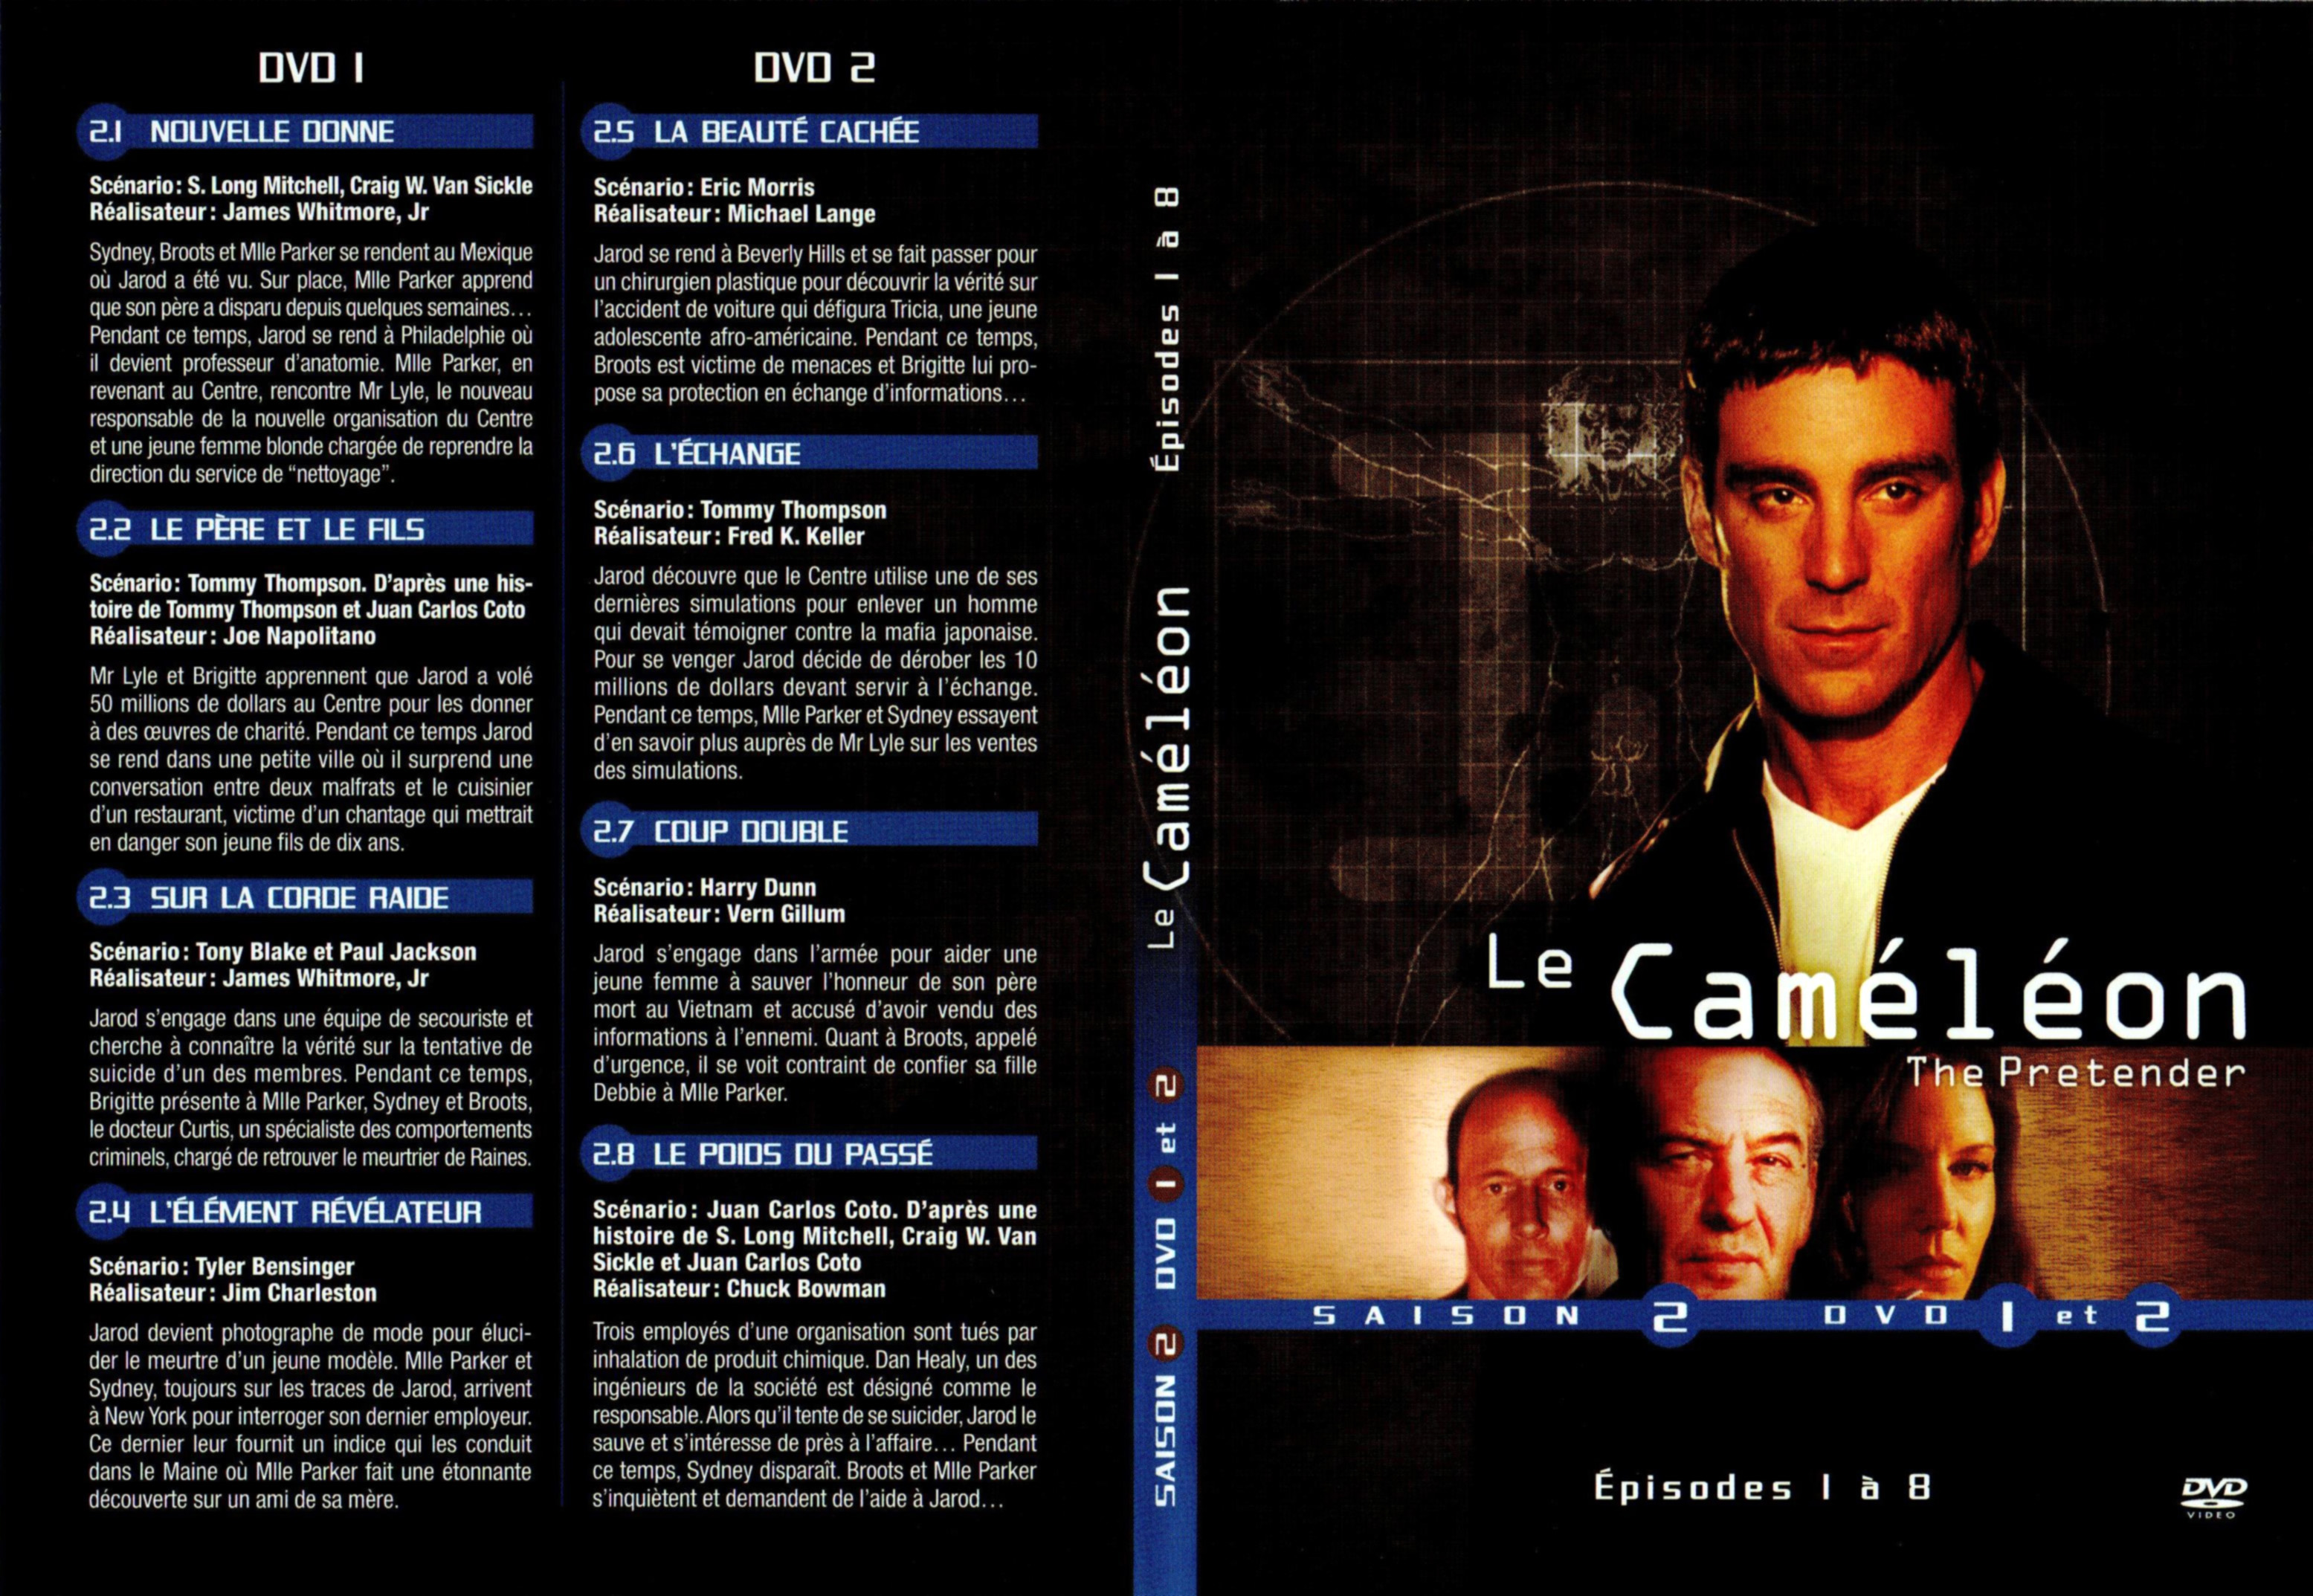 Jaquette DVD Le camlon Saison 2 DVD 1